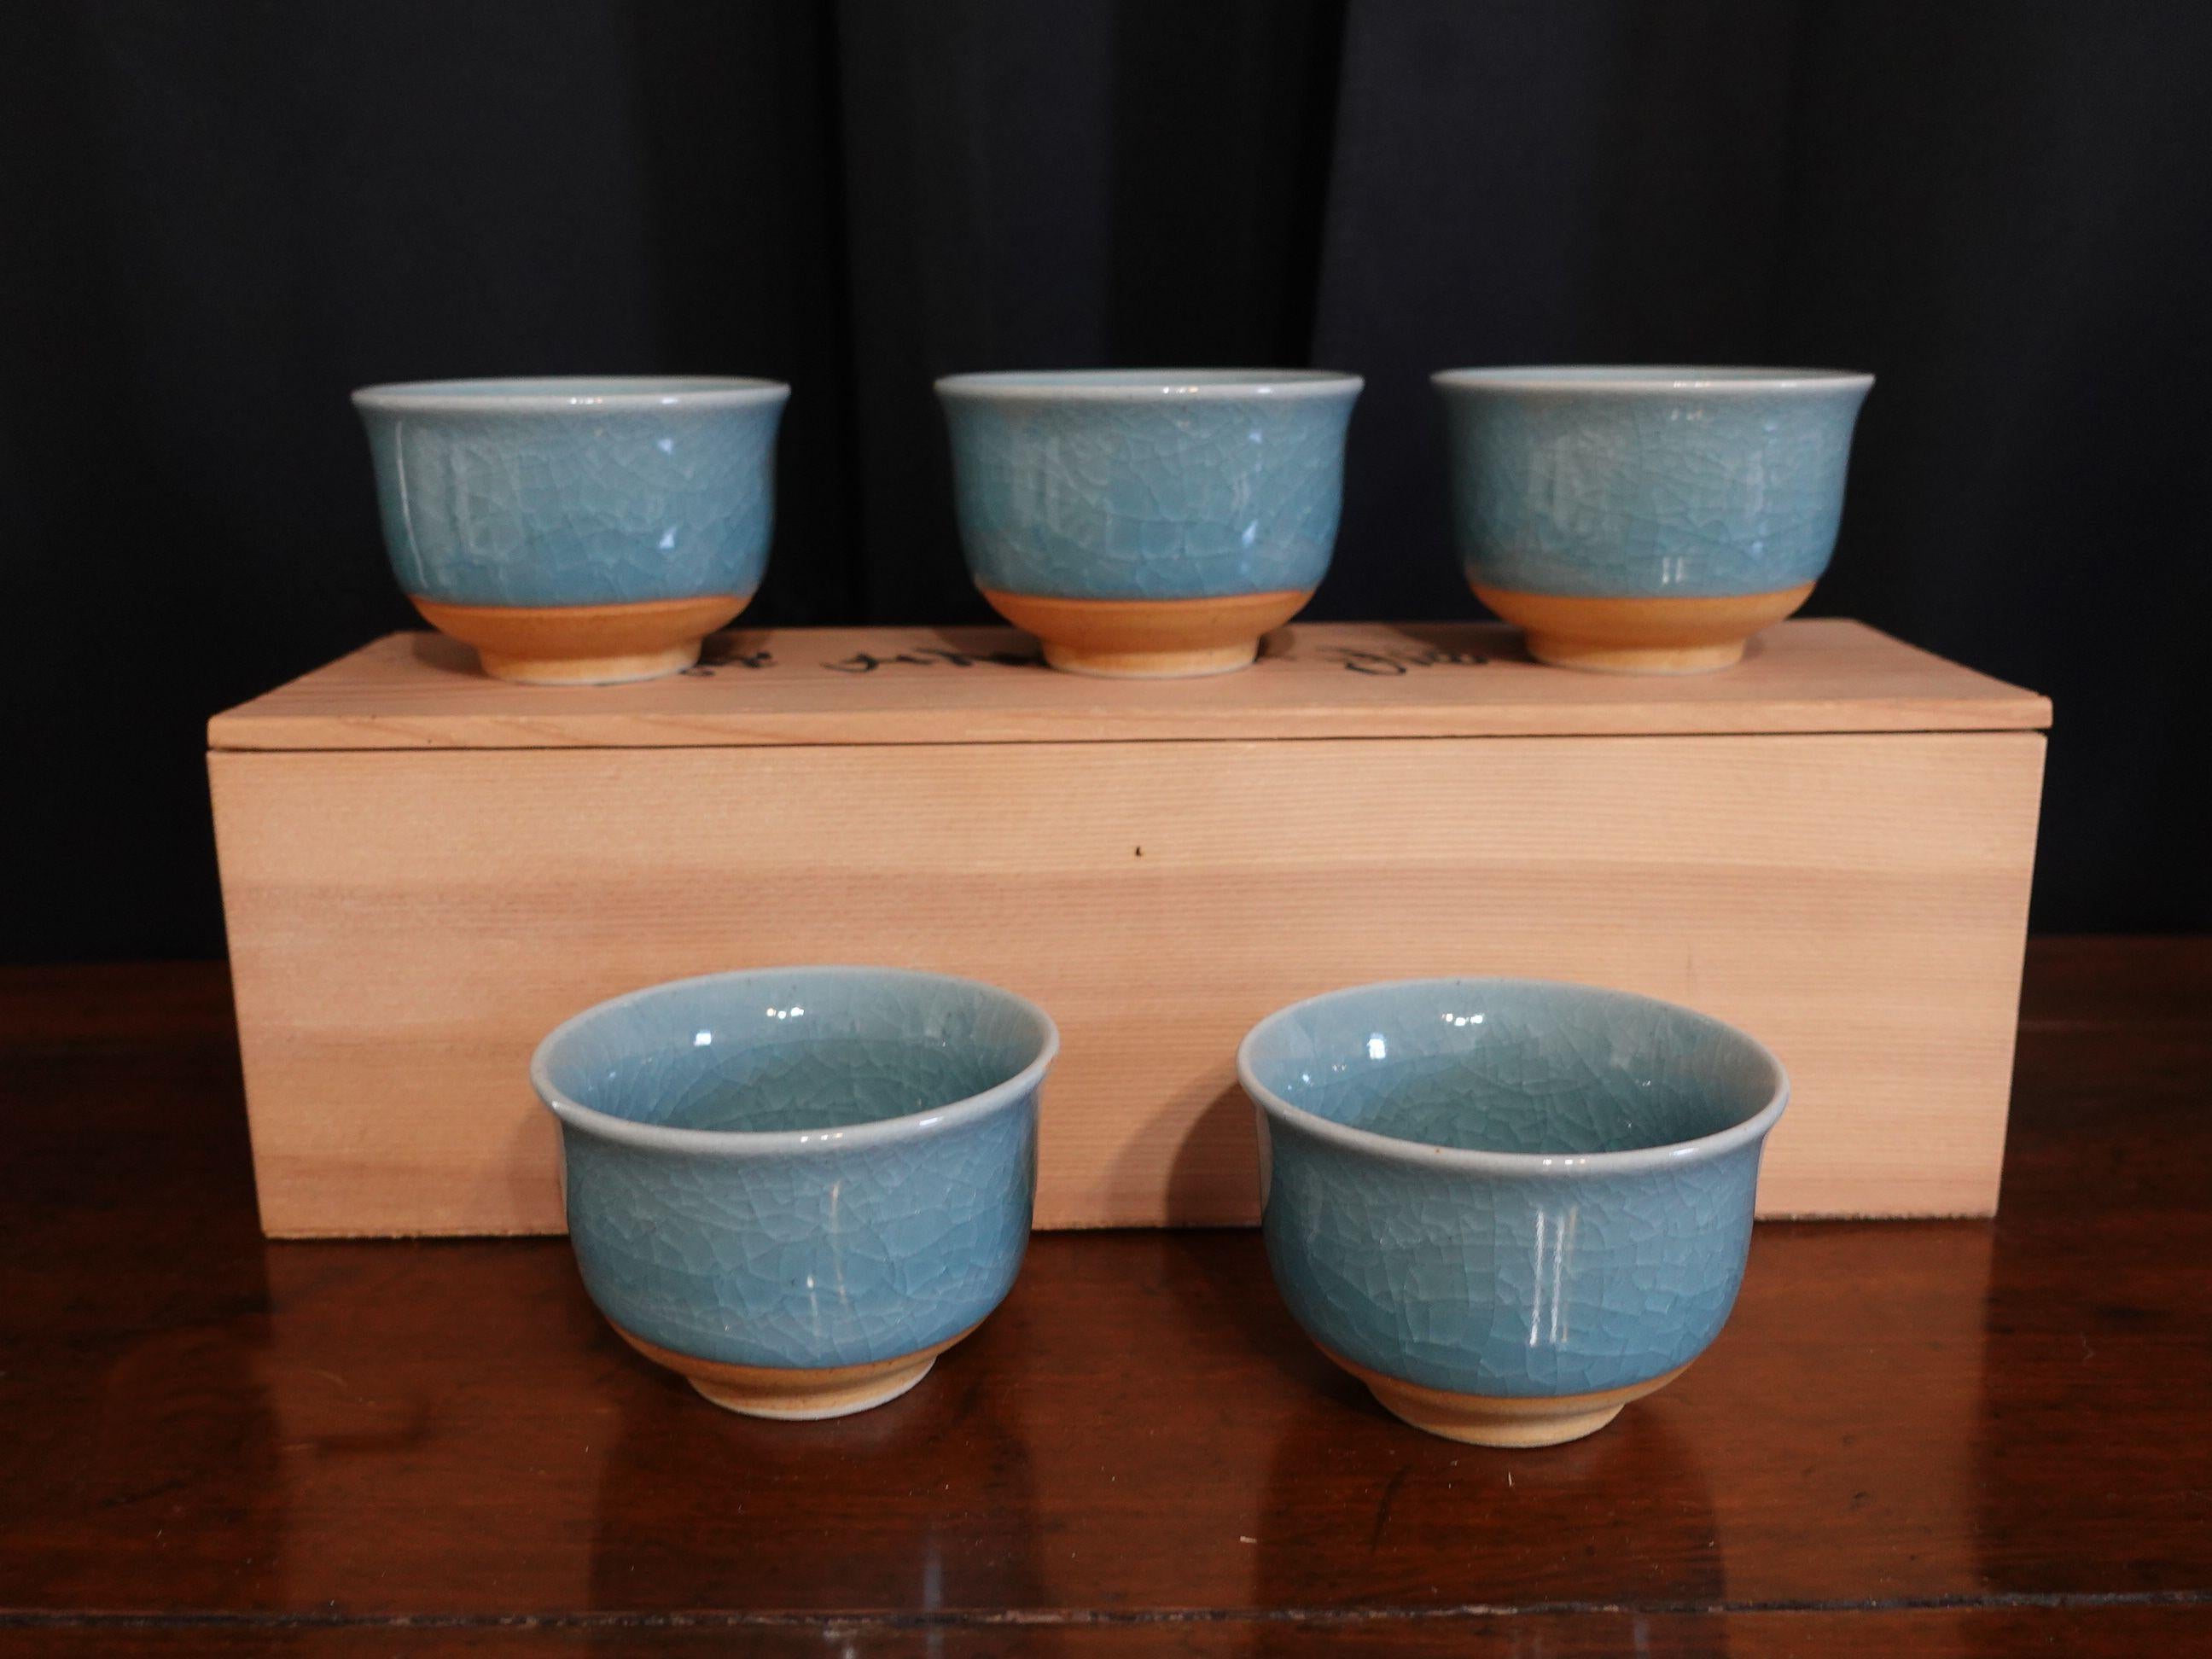 Ancien - Ensemble de 5 tasses à thé Tajimi japonaises avec glaçage bleu clair.
Boîte d'origine incluse avec le sceau

En bon état neuf d'origine et juste trouvé dans l'entrepôt, jamais utilisé auparavant.